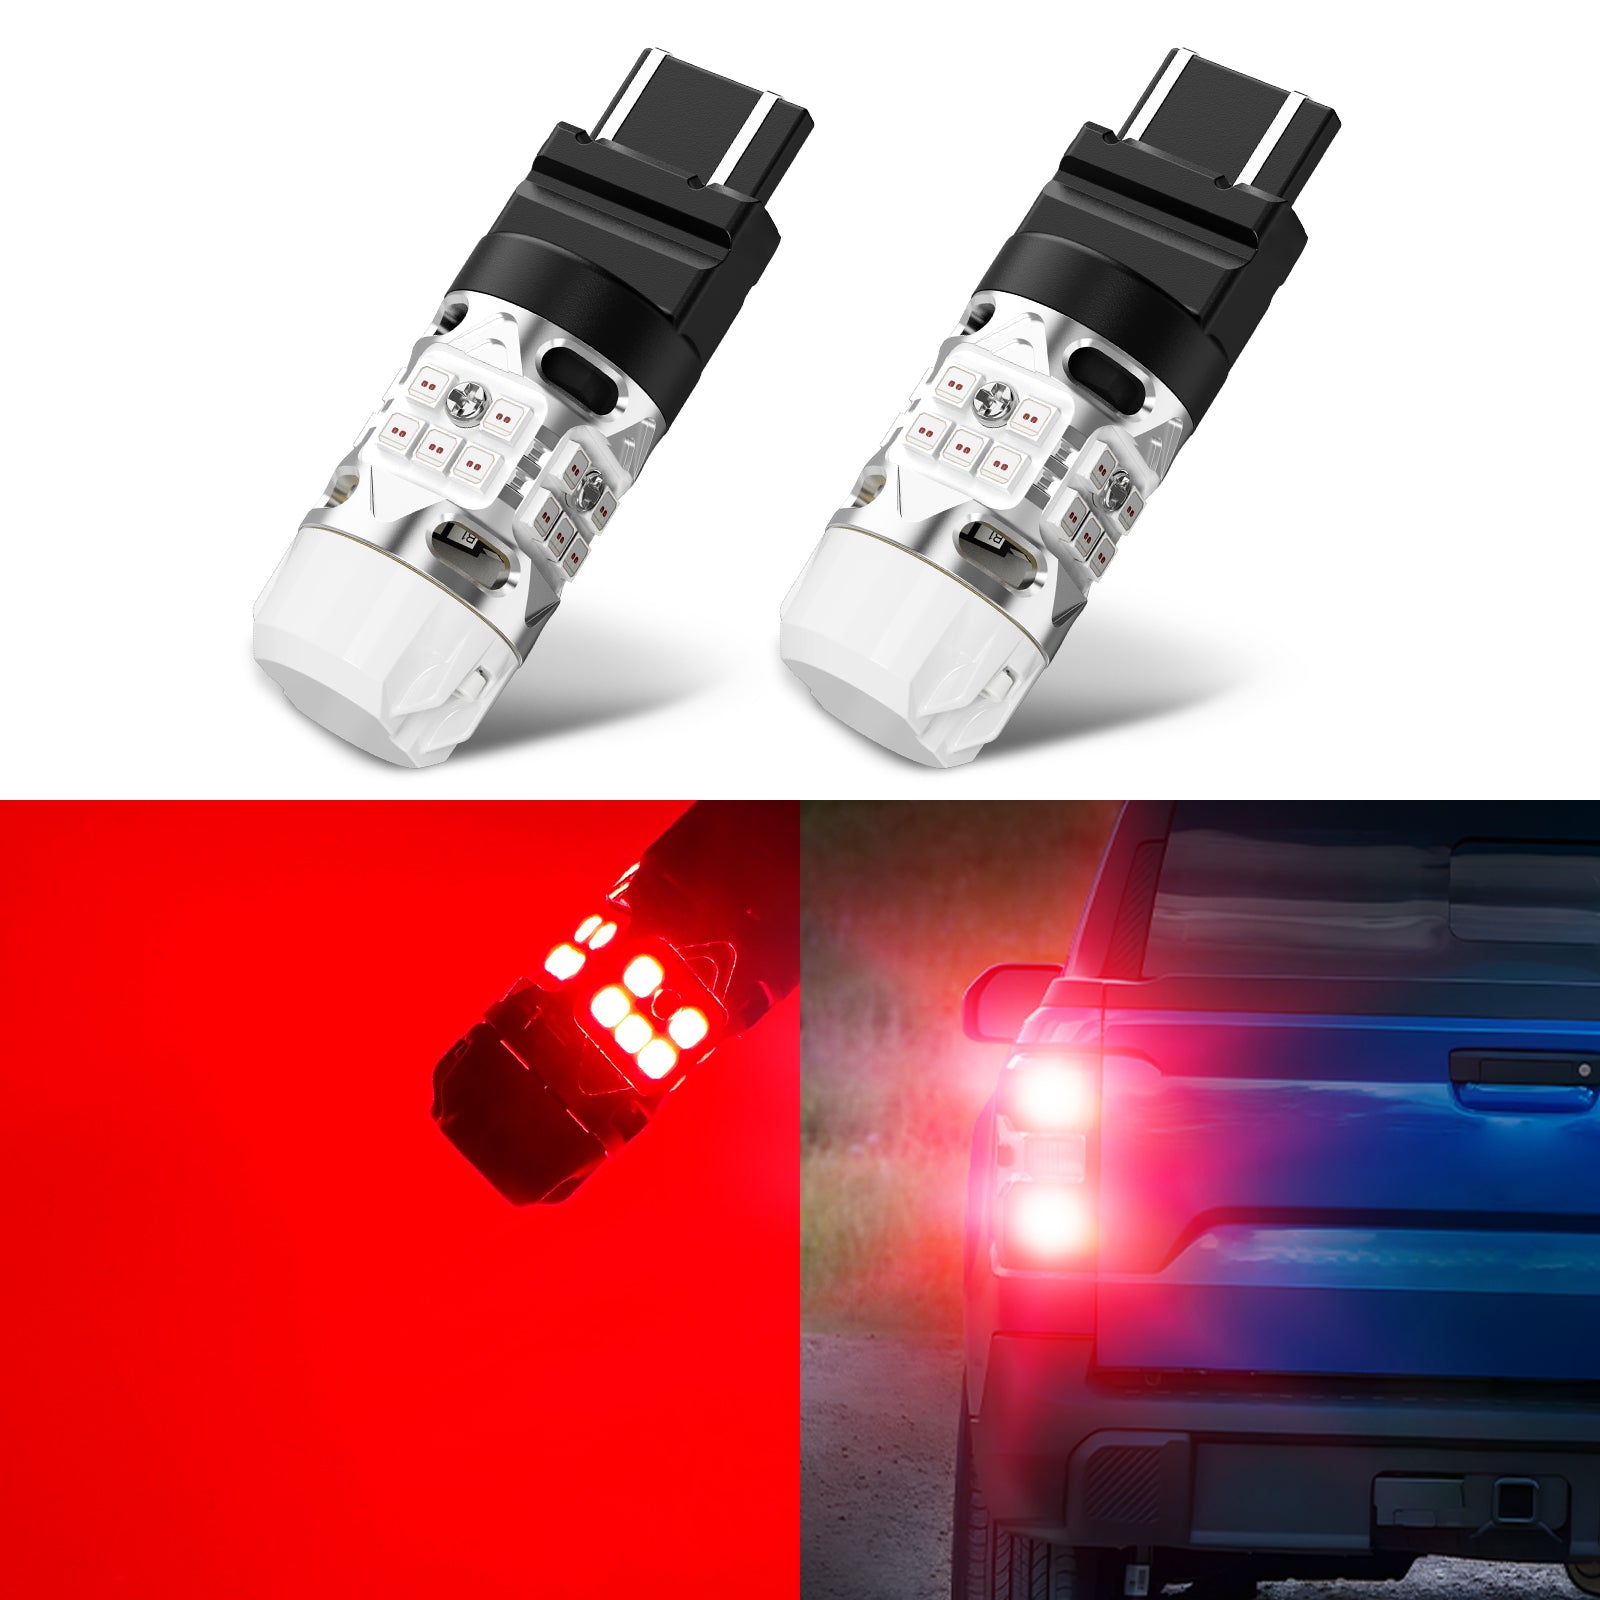 LED Car Lights Bulb  MAXGTRS - 2× T15 W16W 921 912 LED 4014+3030 LED  Backup Car Reversing Light Bulb Backup Canbus Turn Signal Lamp — maxgtrs